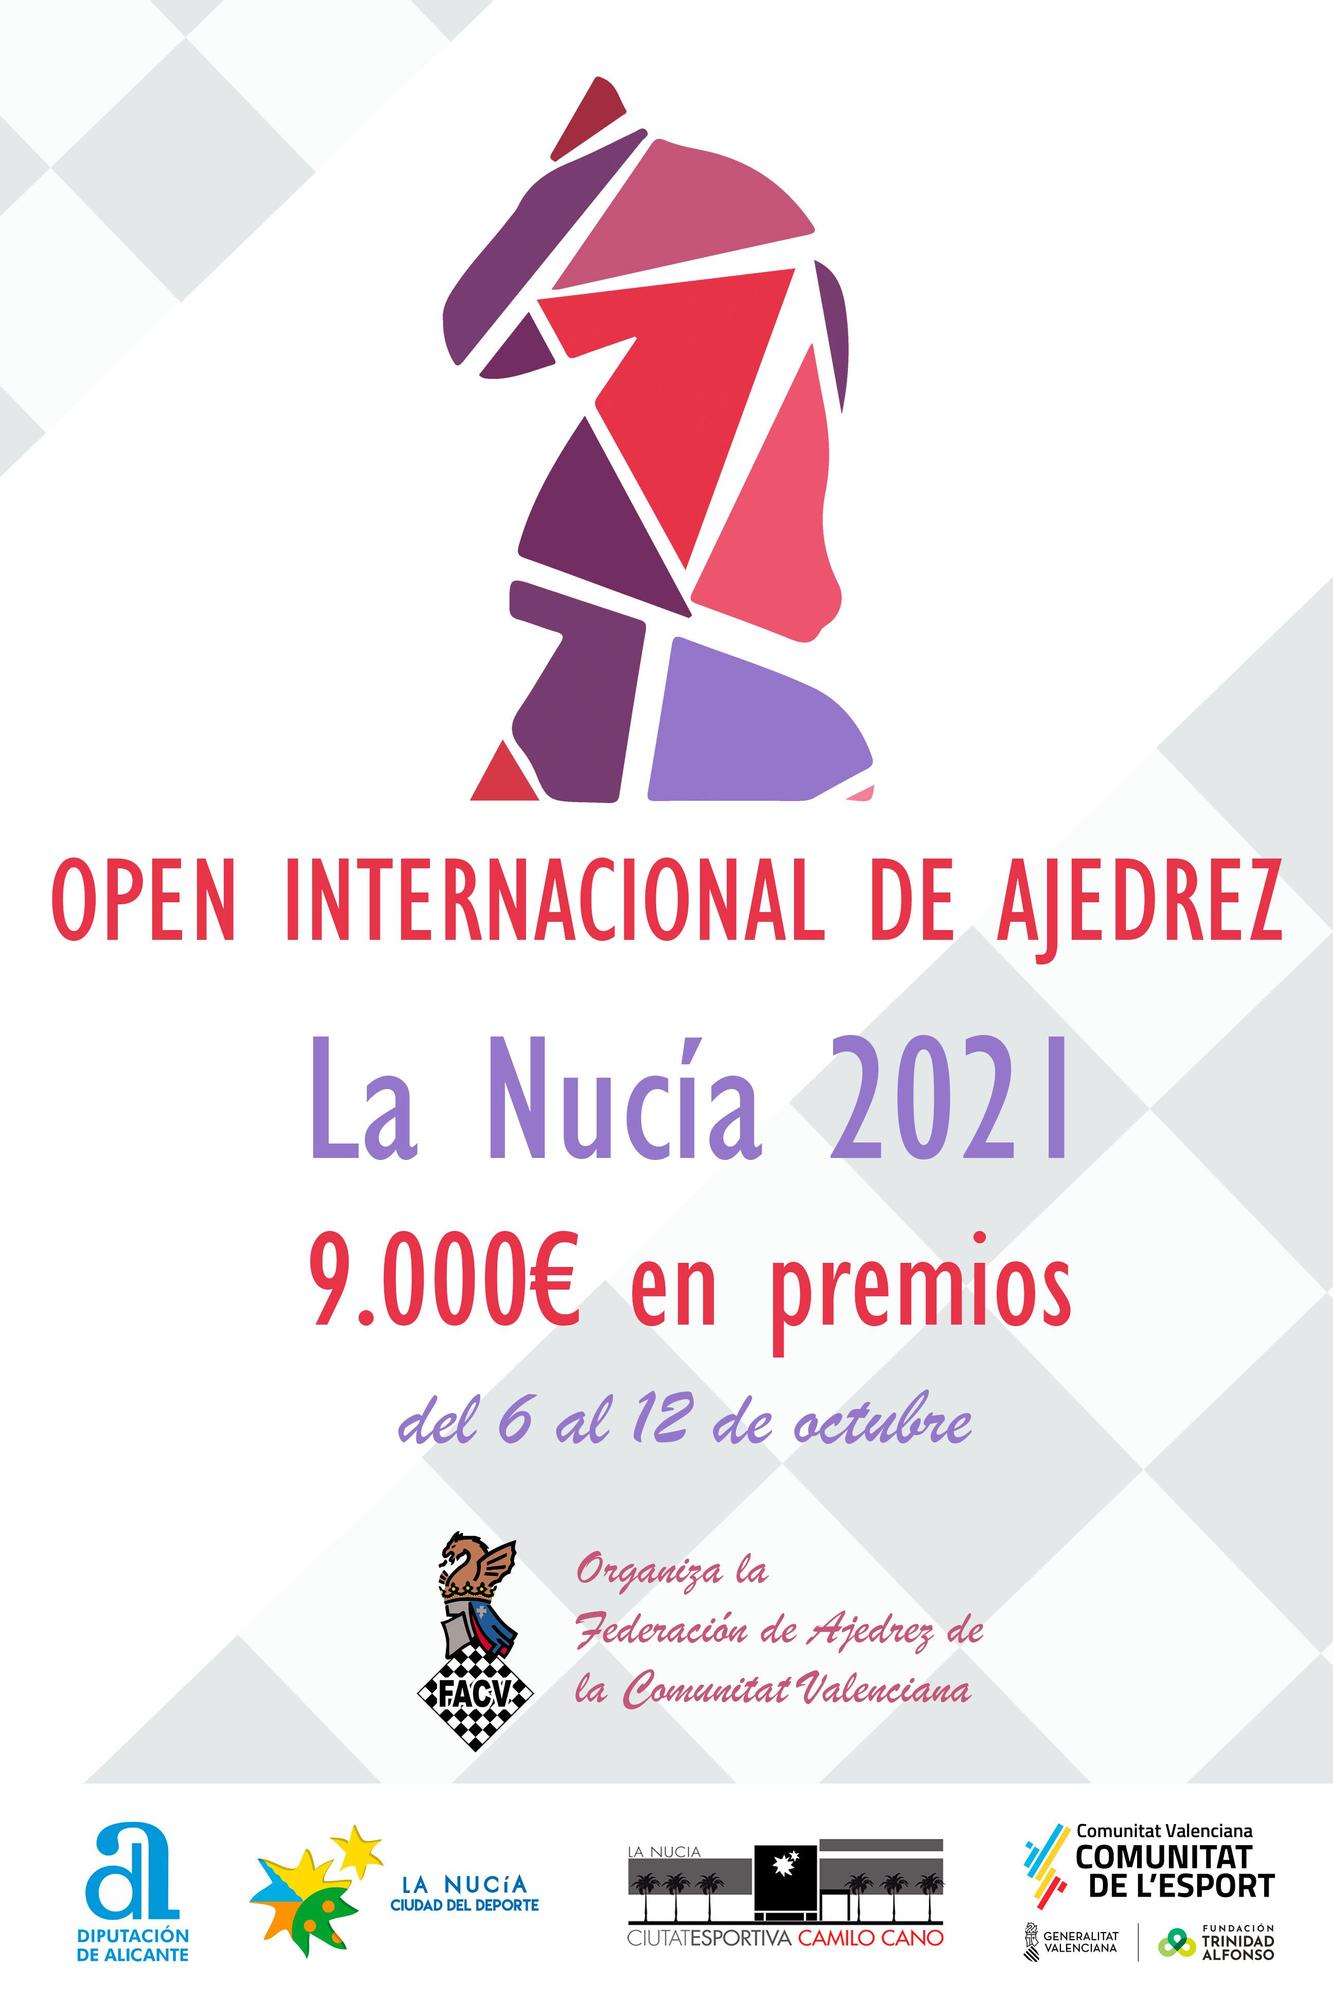 Cartel anunvciador del Open Internacional de Ajedrez de La Nucía 2021